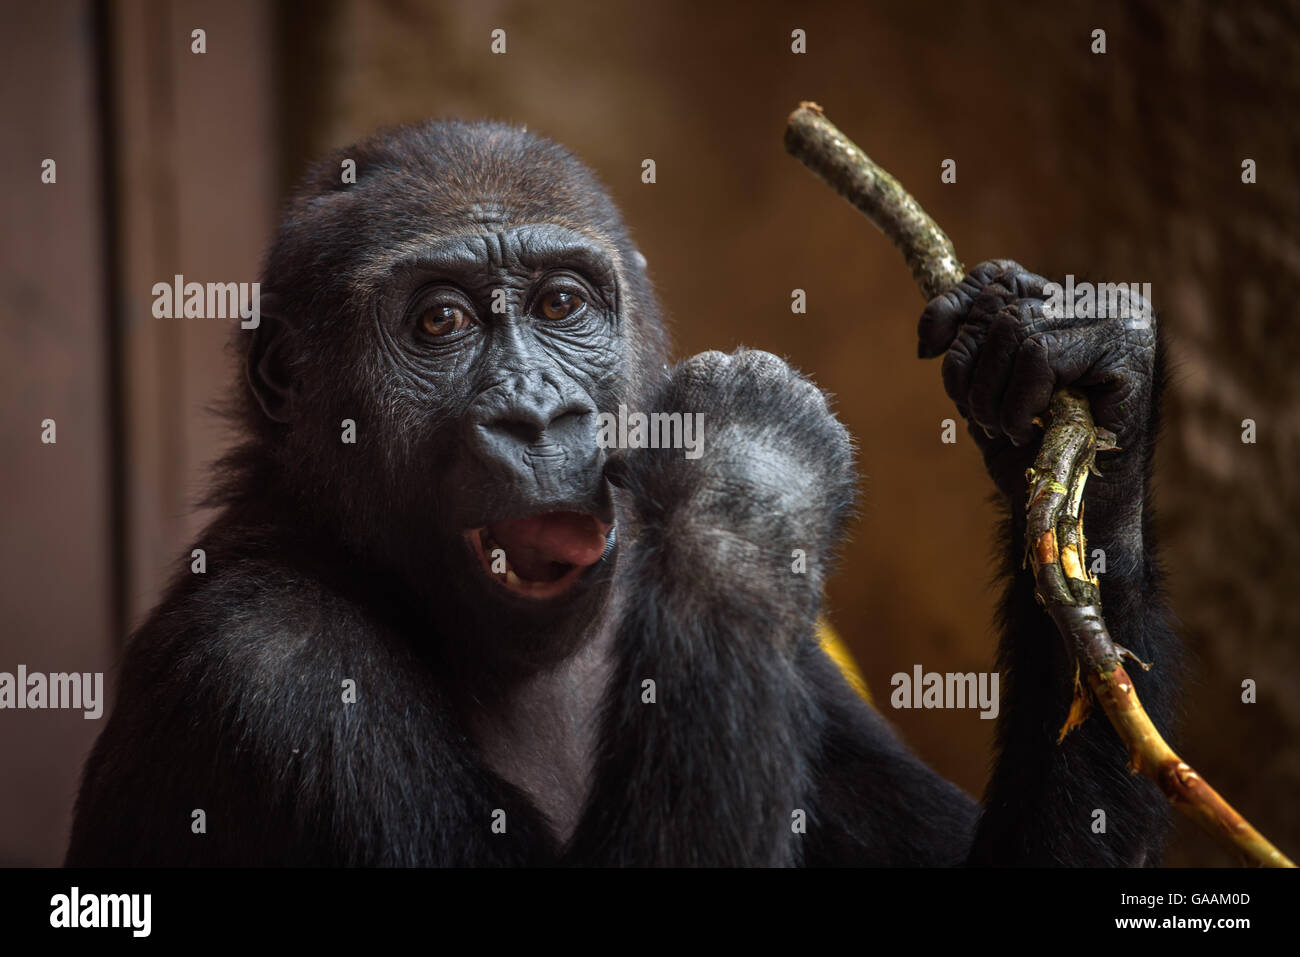 Joven gorila de las tierras bajas occidentales juega con una ramita Foto de stock